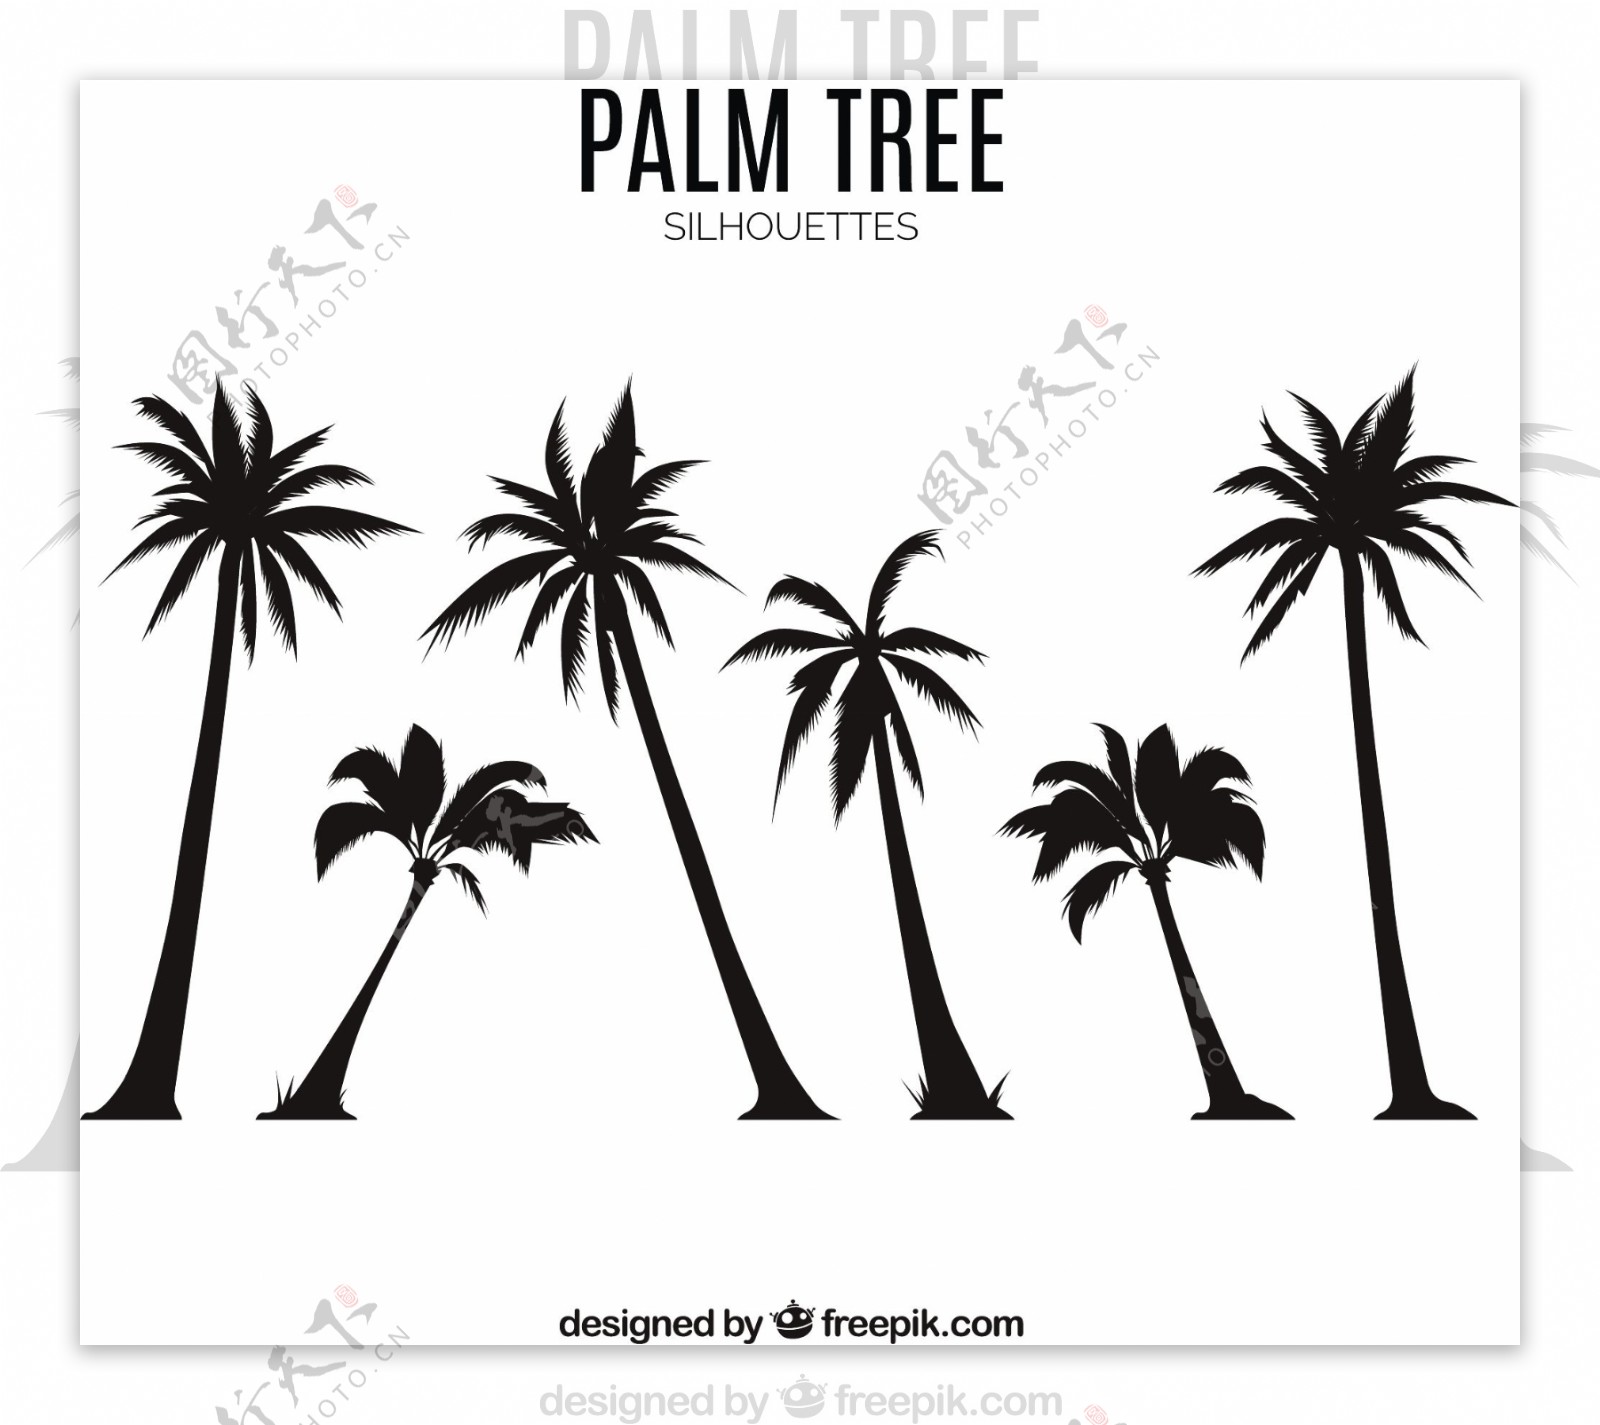 棕榈树剪影效果矢量素材